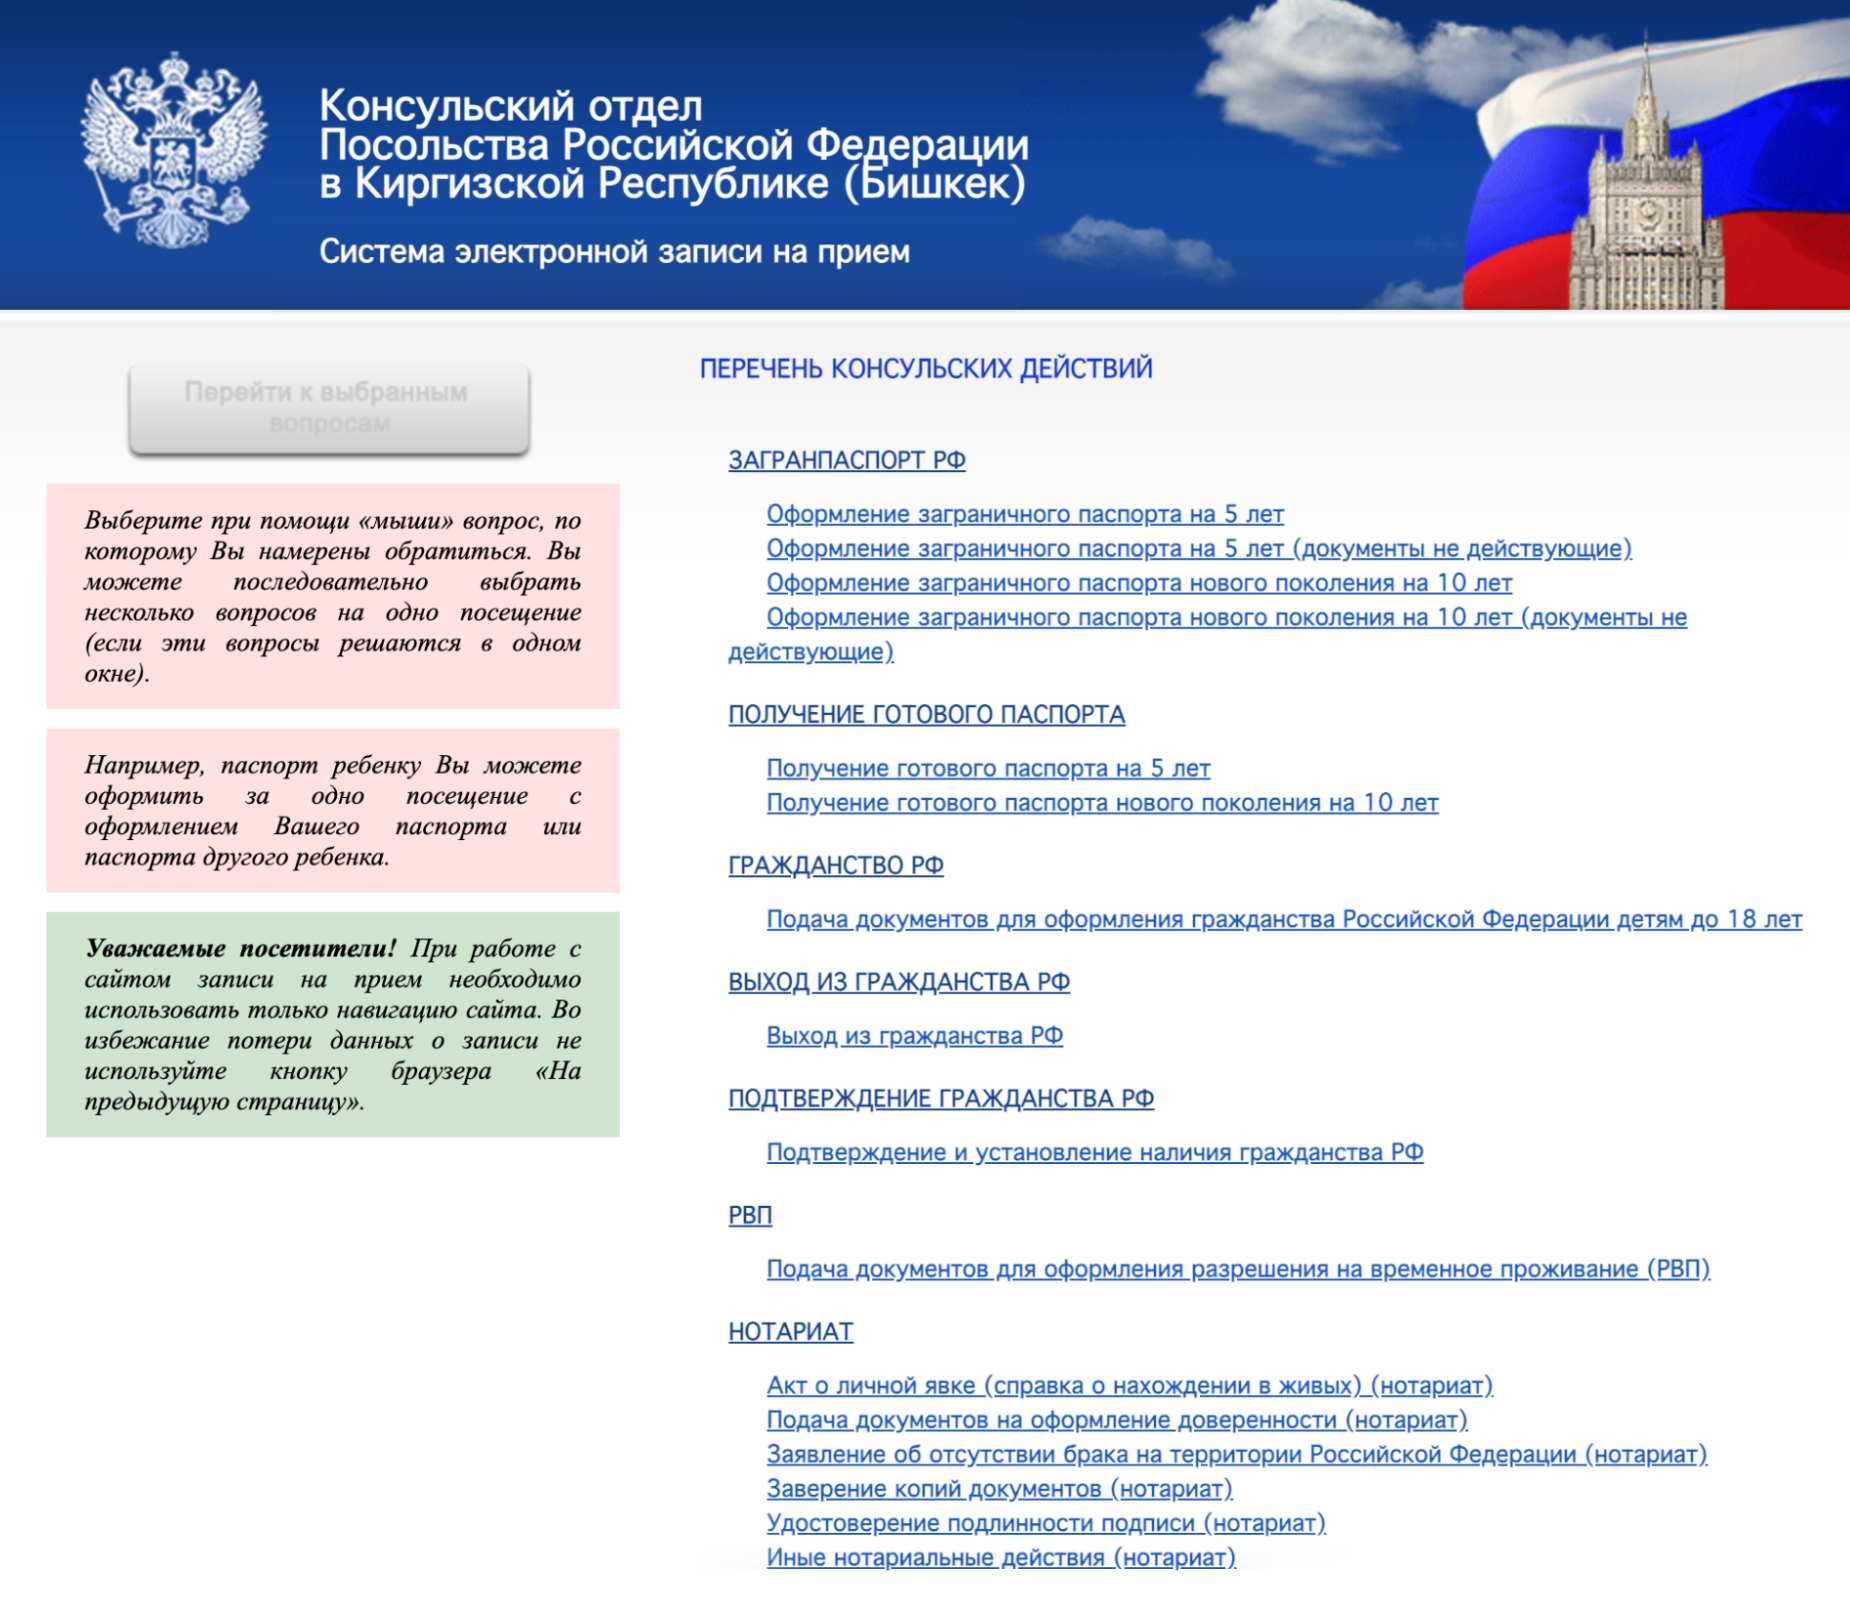 Так выглядит сайт посольства РФ в Киргизии, здесь есть раздел «Нотариат» — там можно записаться на оформление доверенности. Источник: bishkek.kdmid.ru